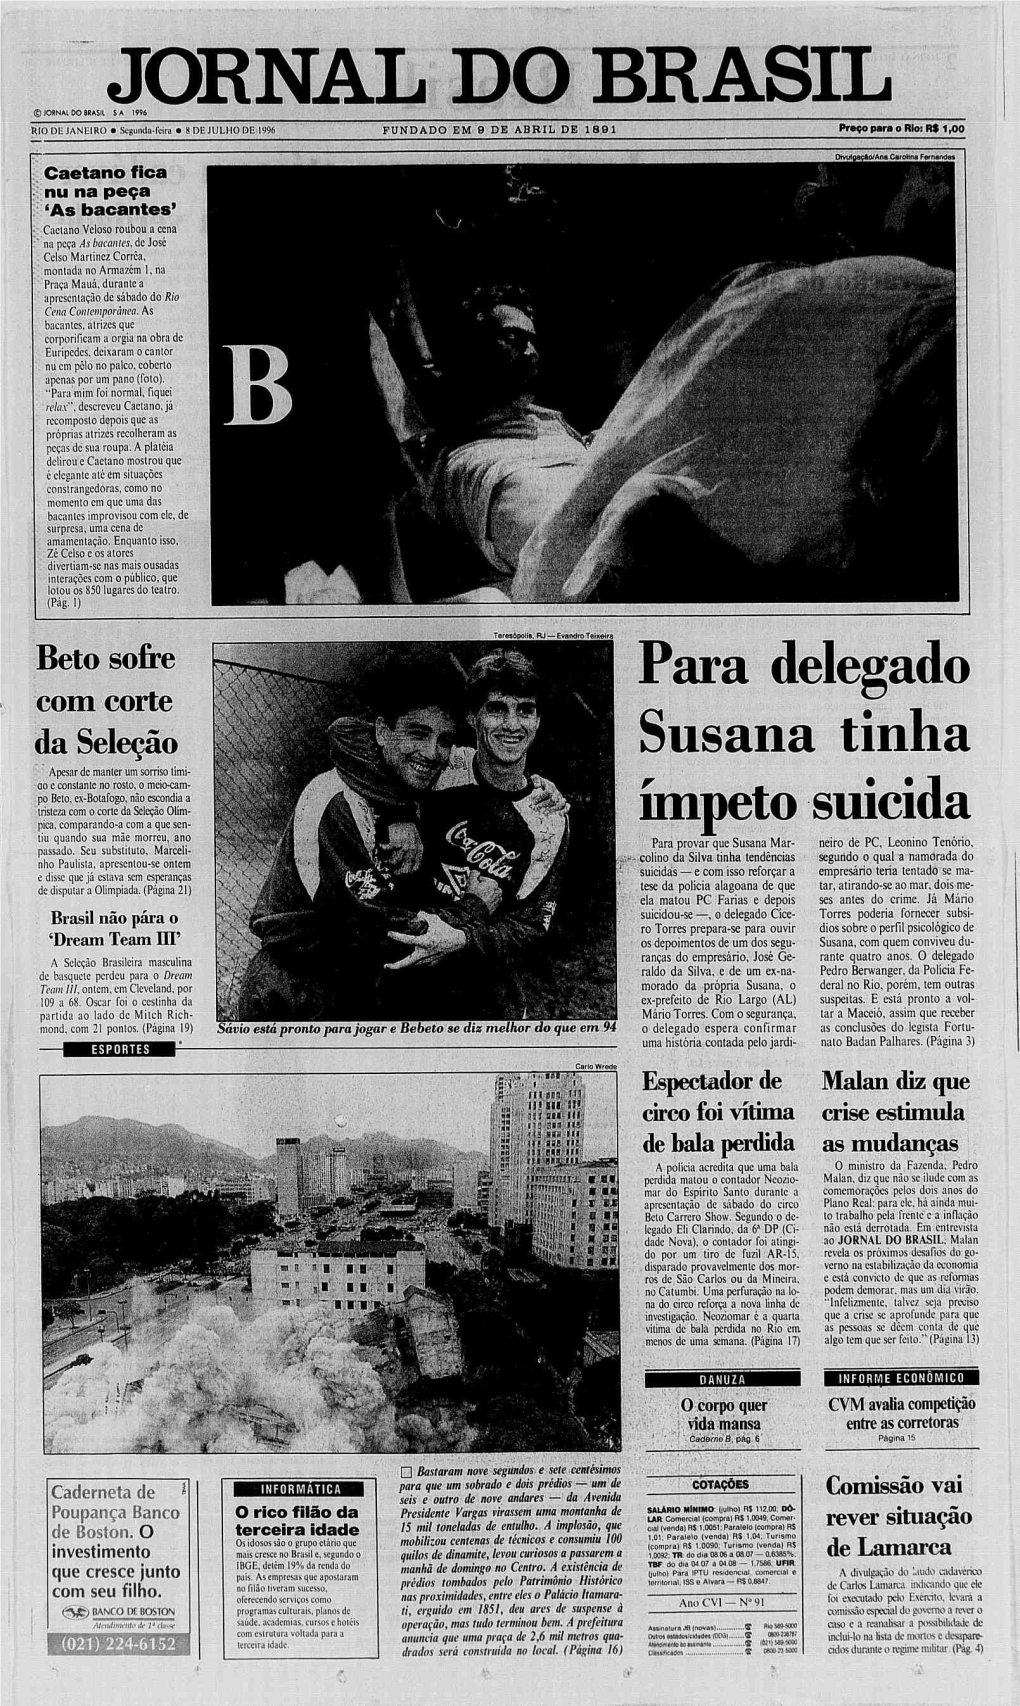 JORNAL DO BRASIL © Jornal DO BRASH S a 1996 RIO DE JANEIRO